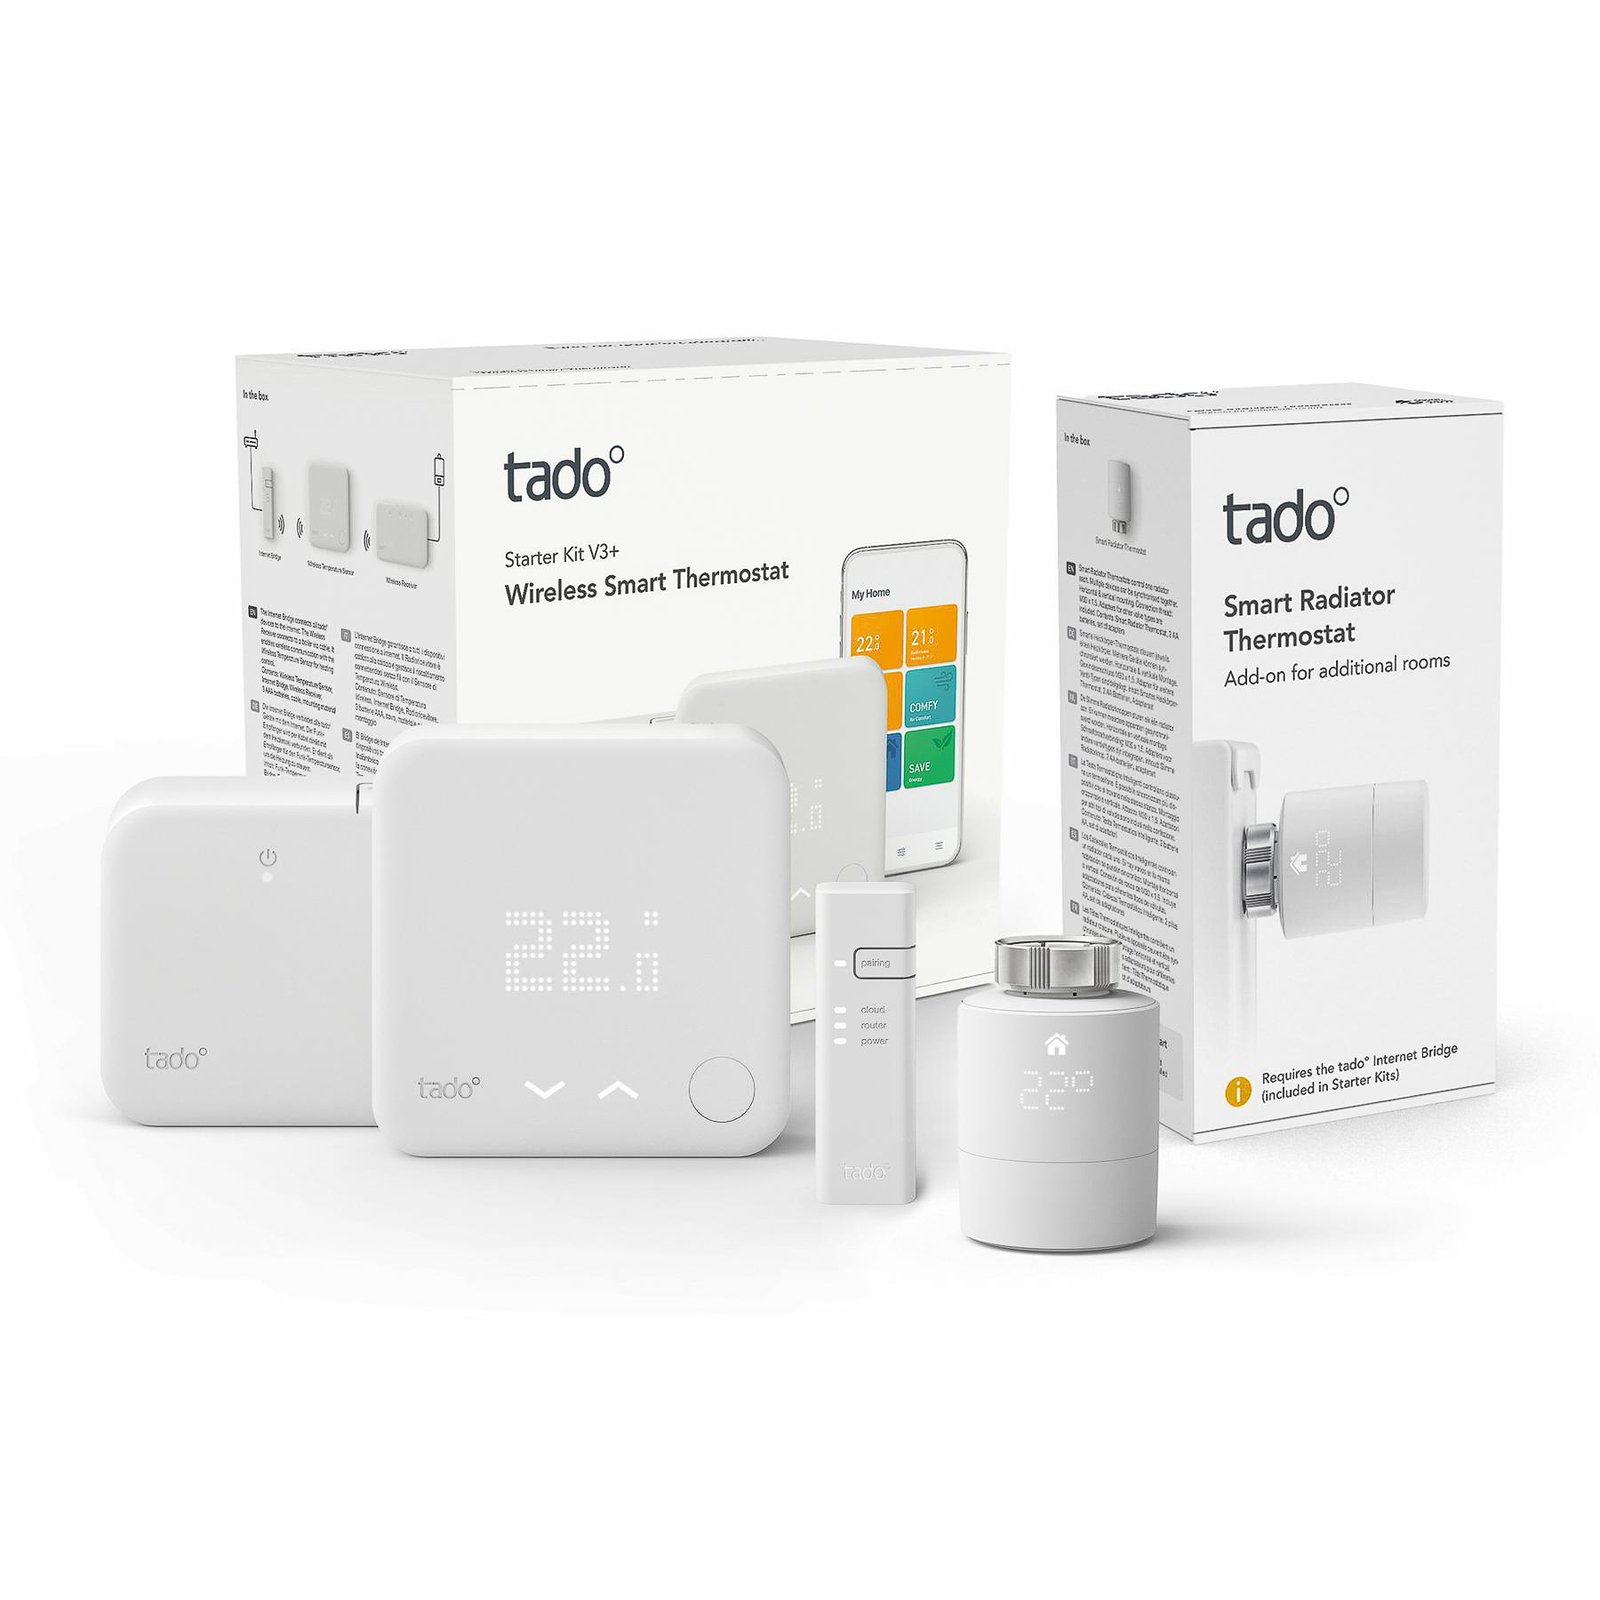 tado° smart thermostat starter kit V3+, wireless